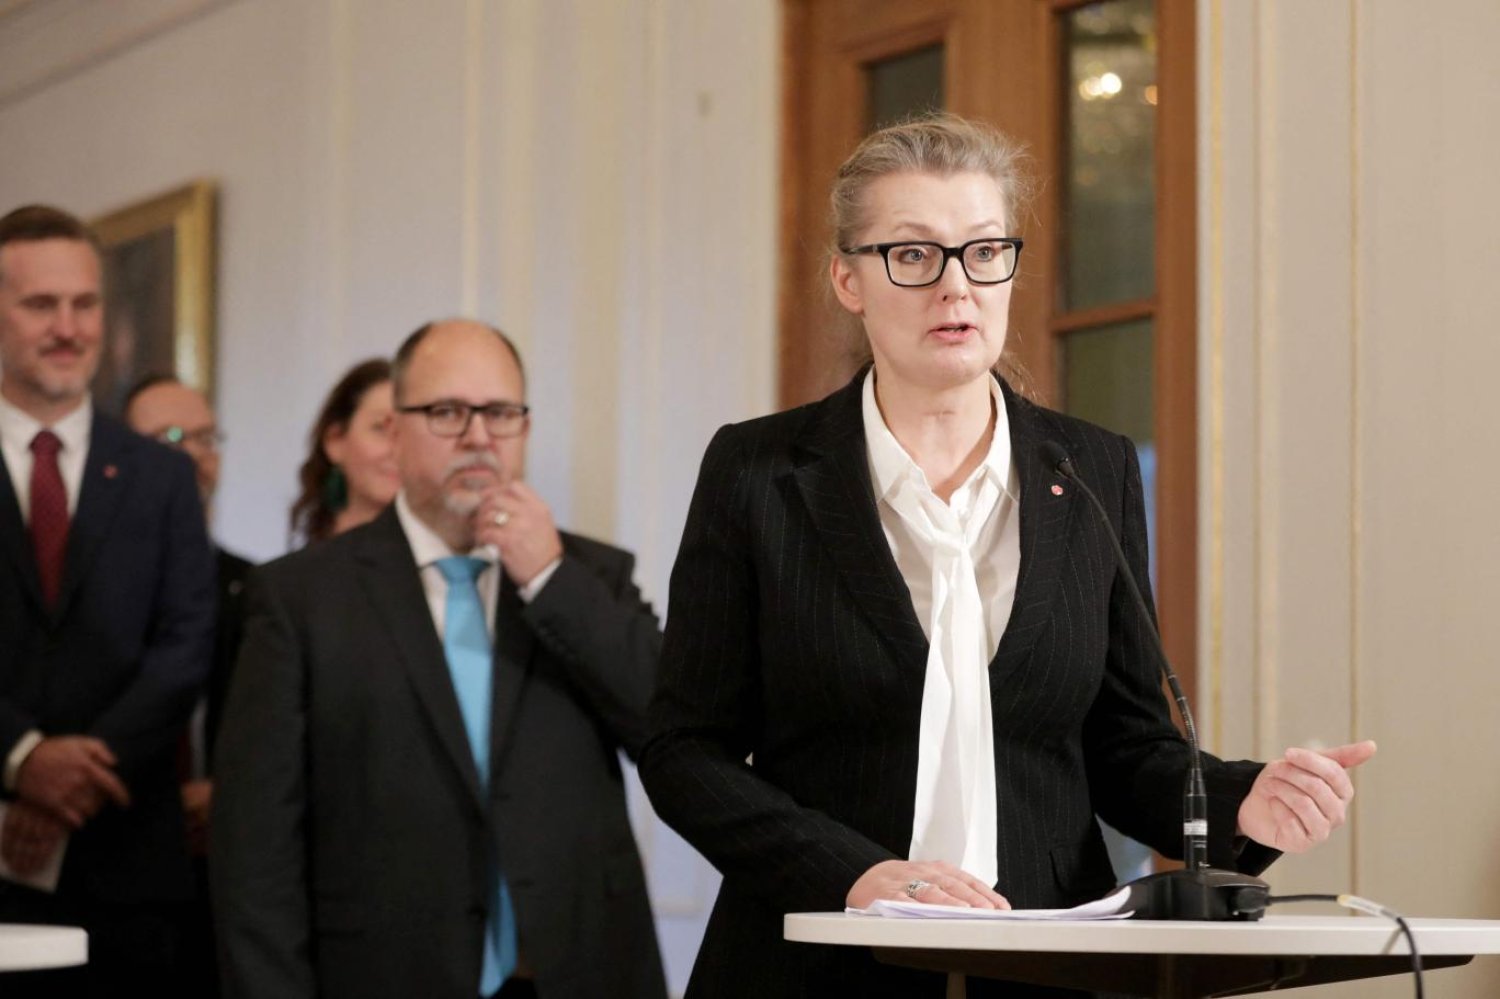 Lina Axelsson Kihlblom, İsveç eğitim sistemini daha öğrenci odaklı hale getirmeyi planladığını söylüyor (AFP)

